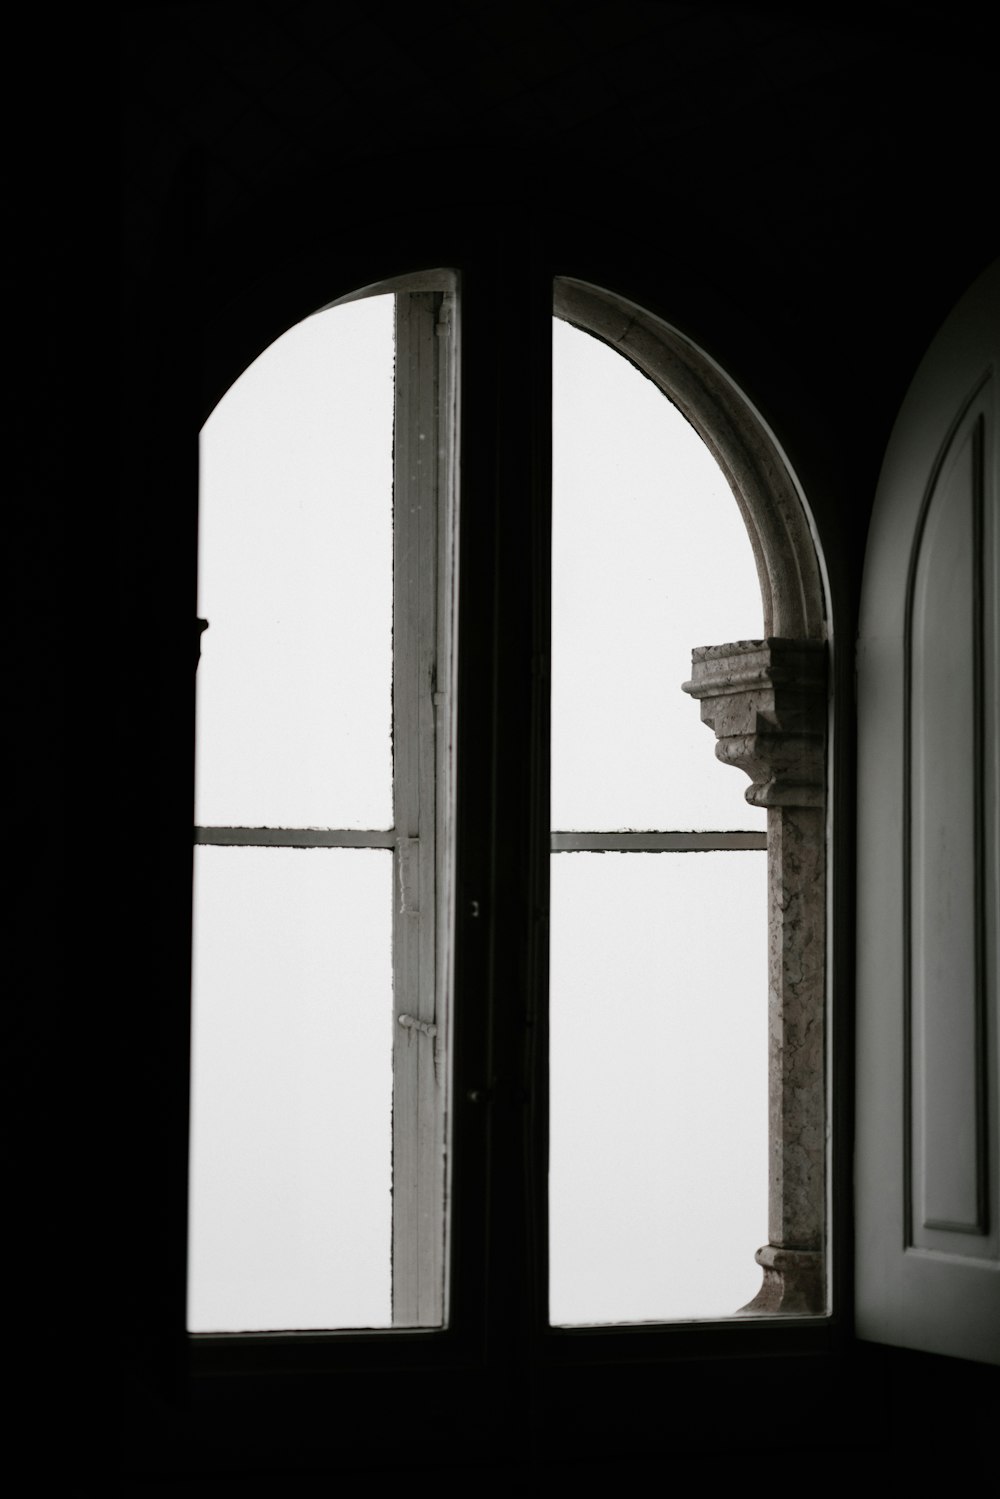 Porte-fenêtre ouverte à l’intérieur de la chambre noire